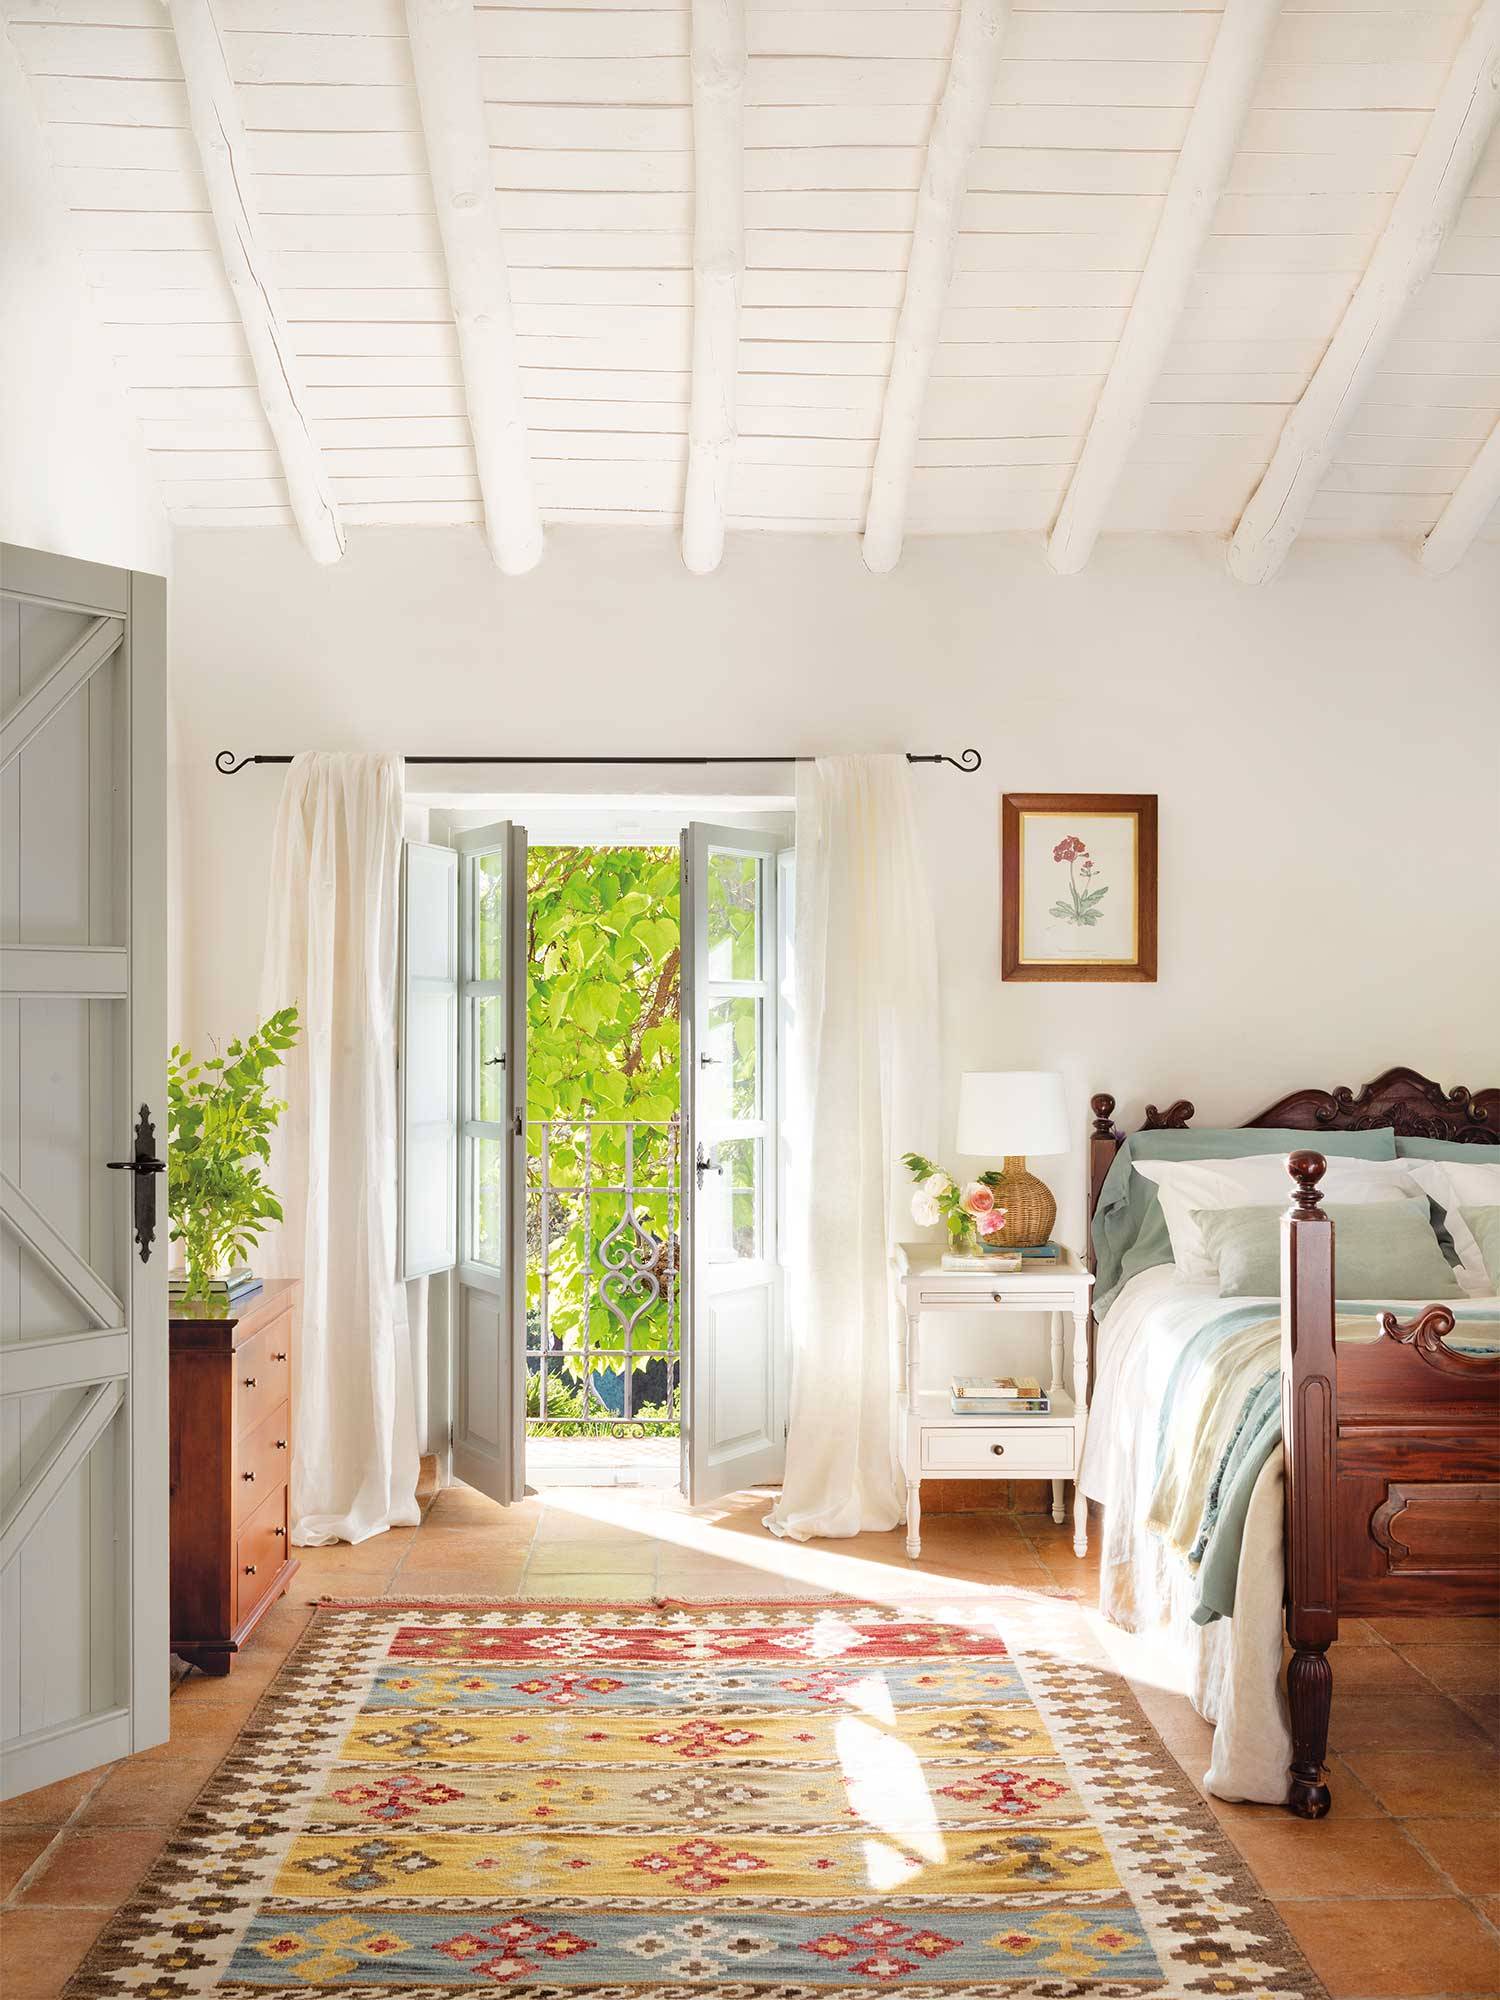 Dormitorio rústico con muebles de madera y una alfombra de algodón con motivos geométricos